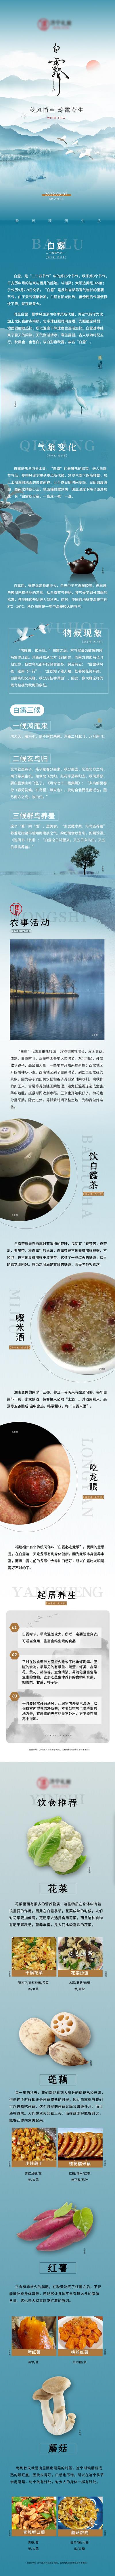 南门网 专题设计 长图 二十四节气 白露 食物 养生 习俗 山水 意境 白鹭 中式